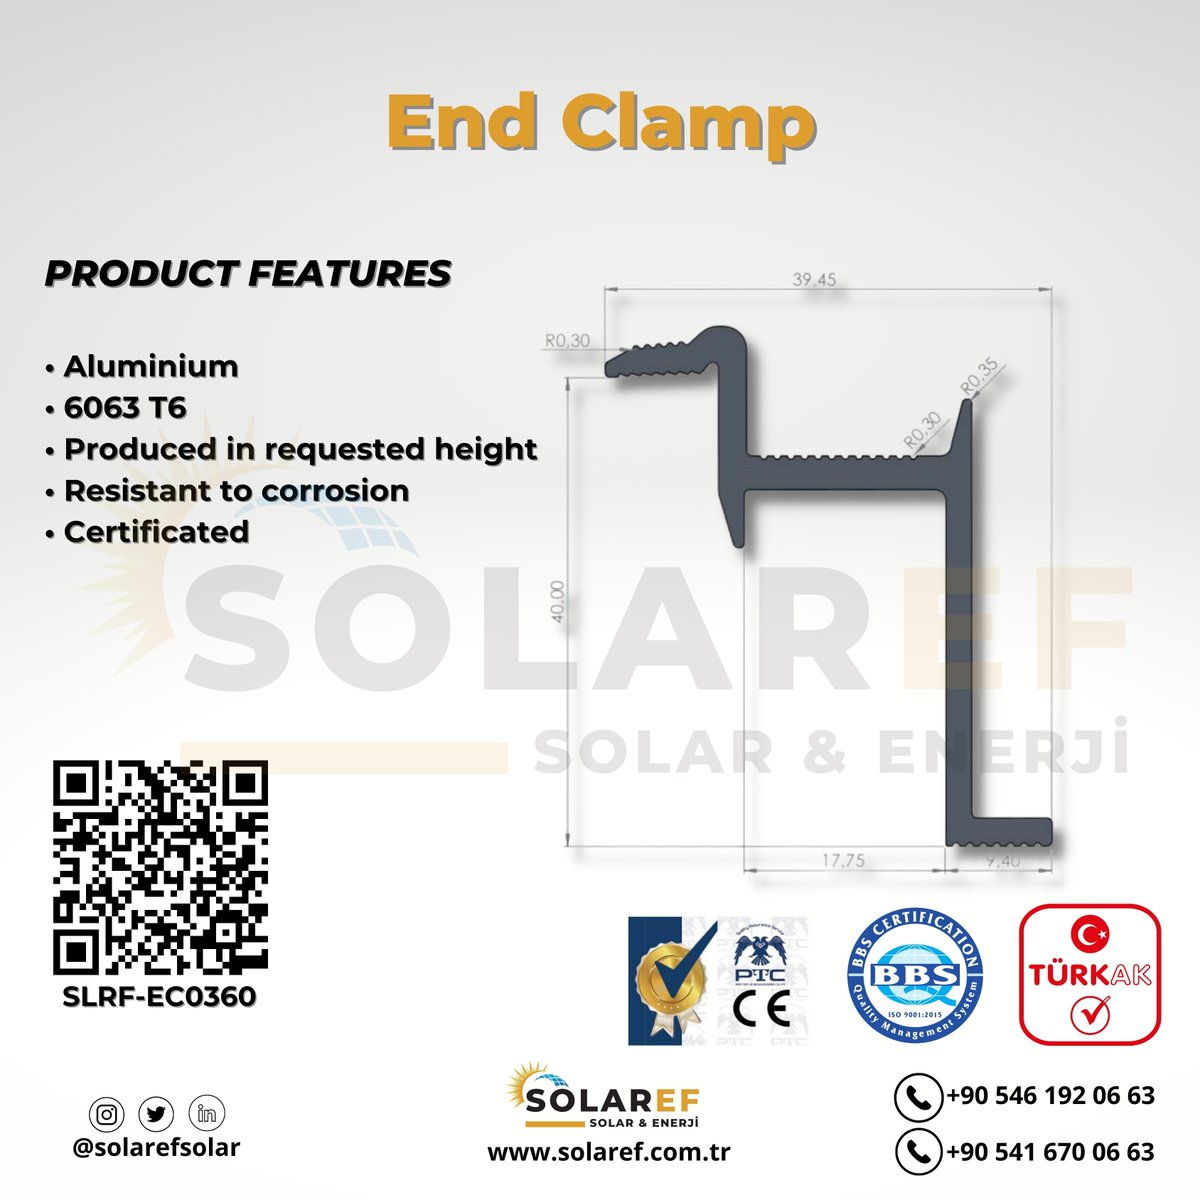 TR/EN
Sonlandırıcı Clamp 3 / End Clamp 3
-Sertifikalı / Certified
-İhracat kalitesinde / Export quality
-Garanti / Guarantee
-T6 6063 Kalite / T6 6063 Quality
Sipariş için / For Order
0546 192 06 63 |Ankara #solarenergy #solarpanels #solarsystem